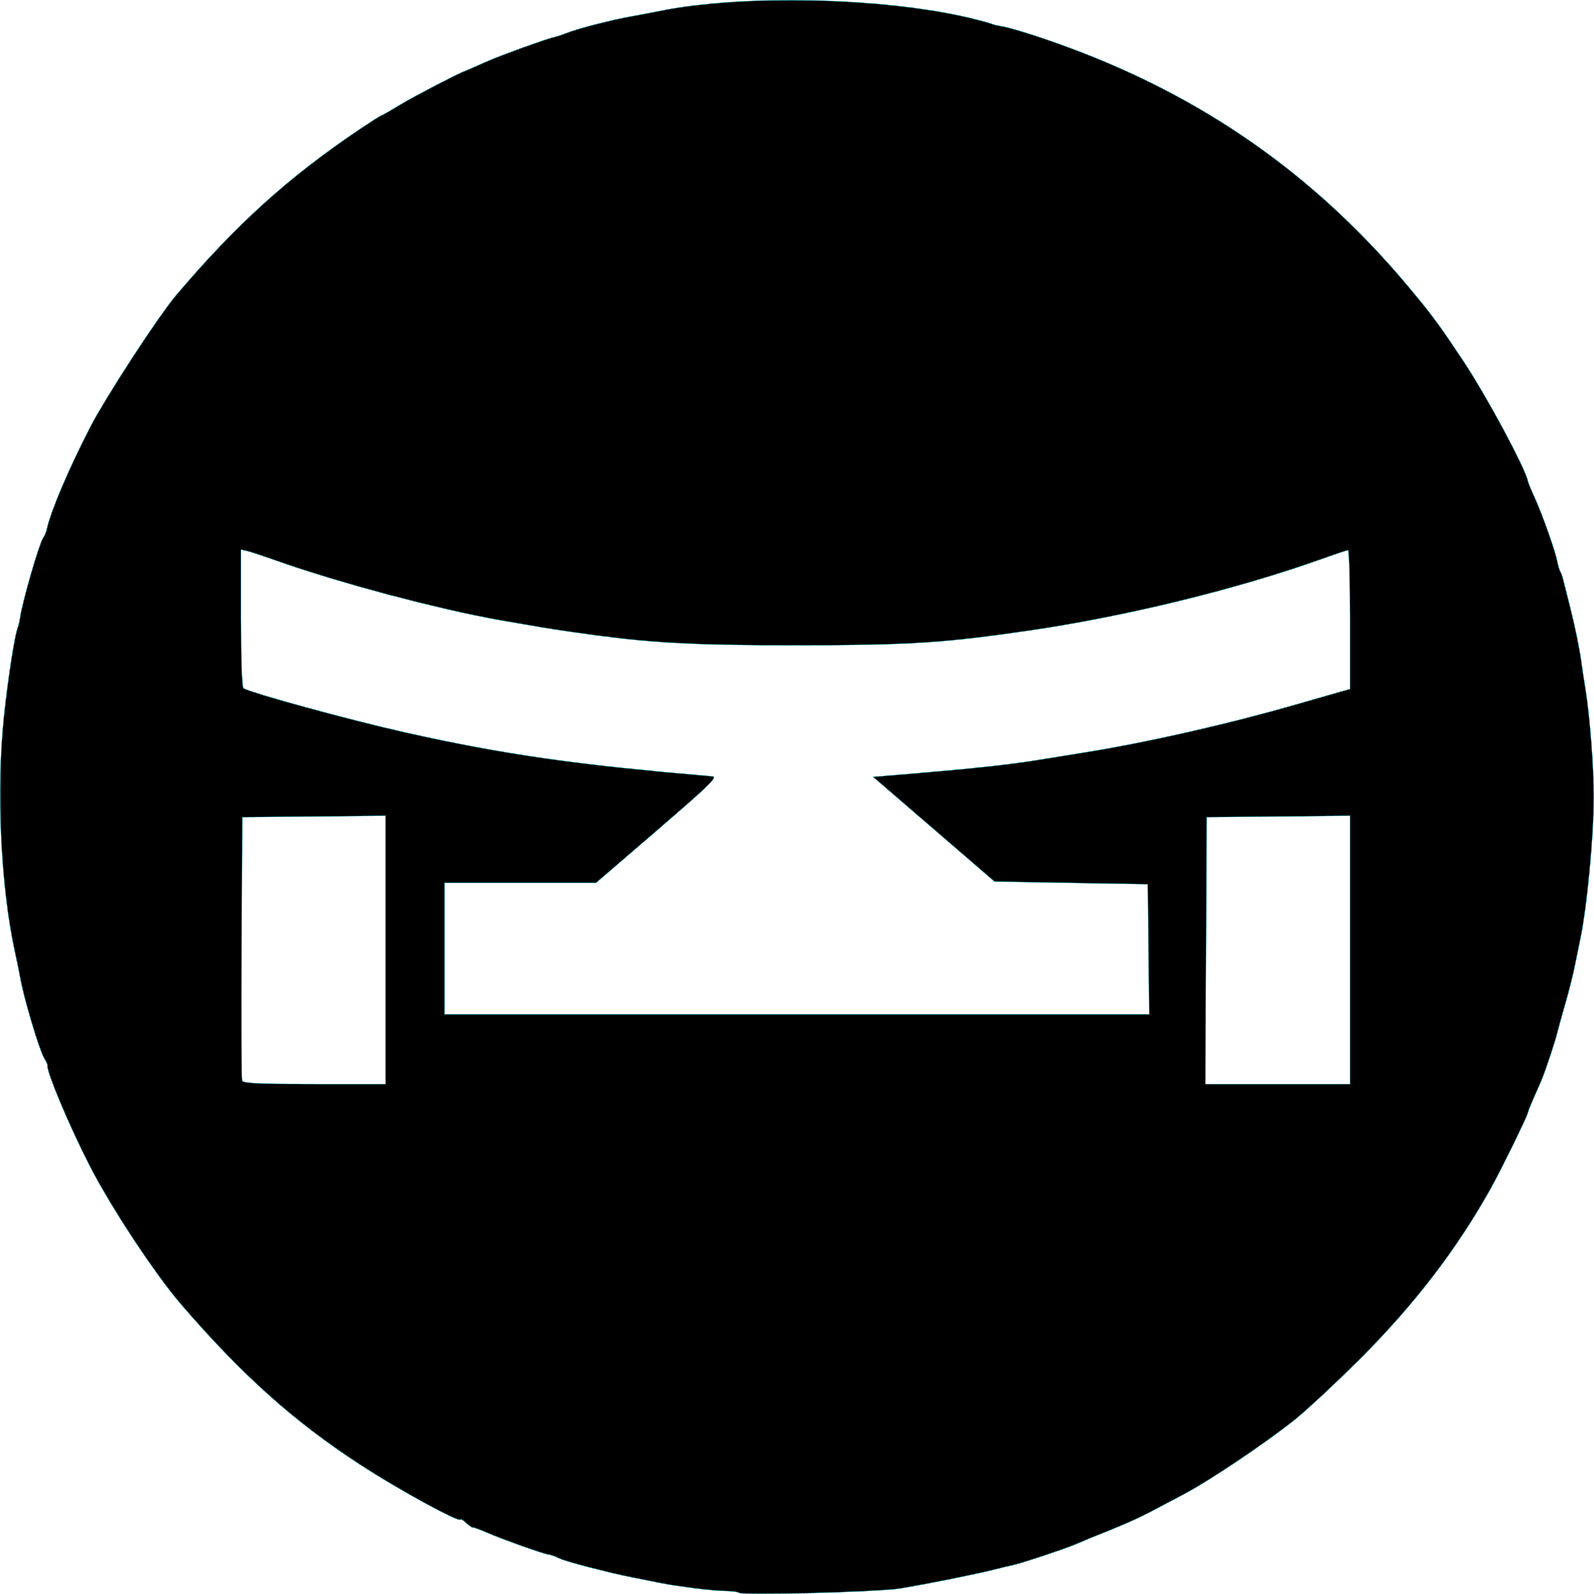 Open Source Skateboards Logo